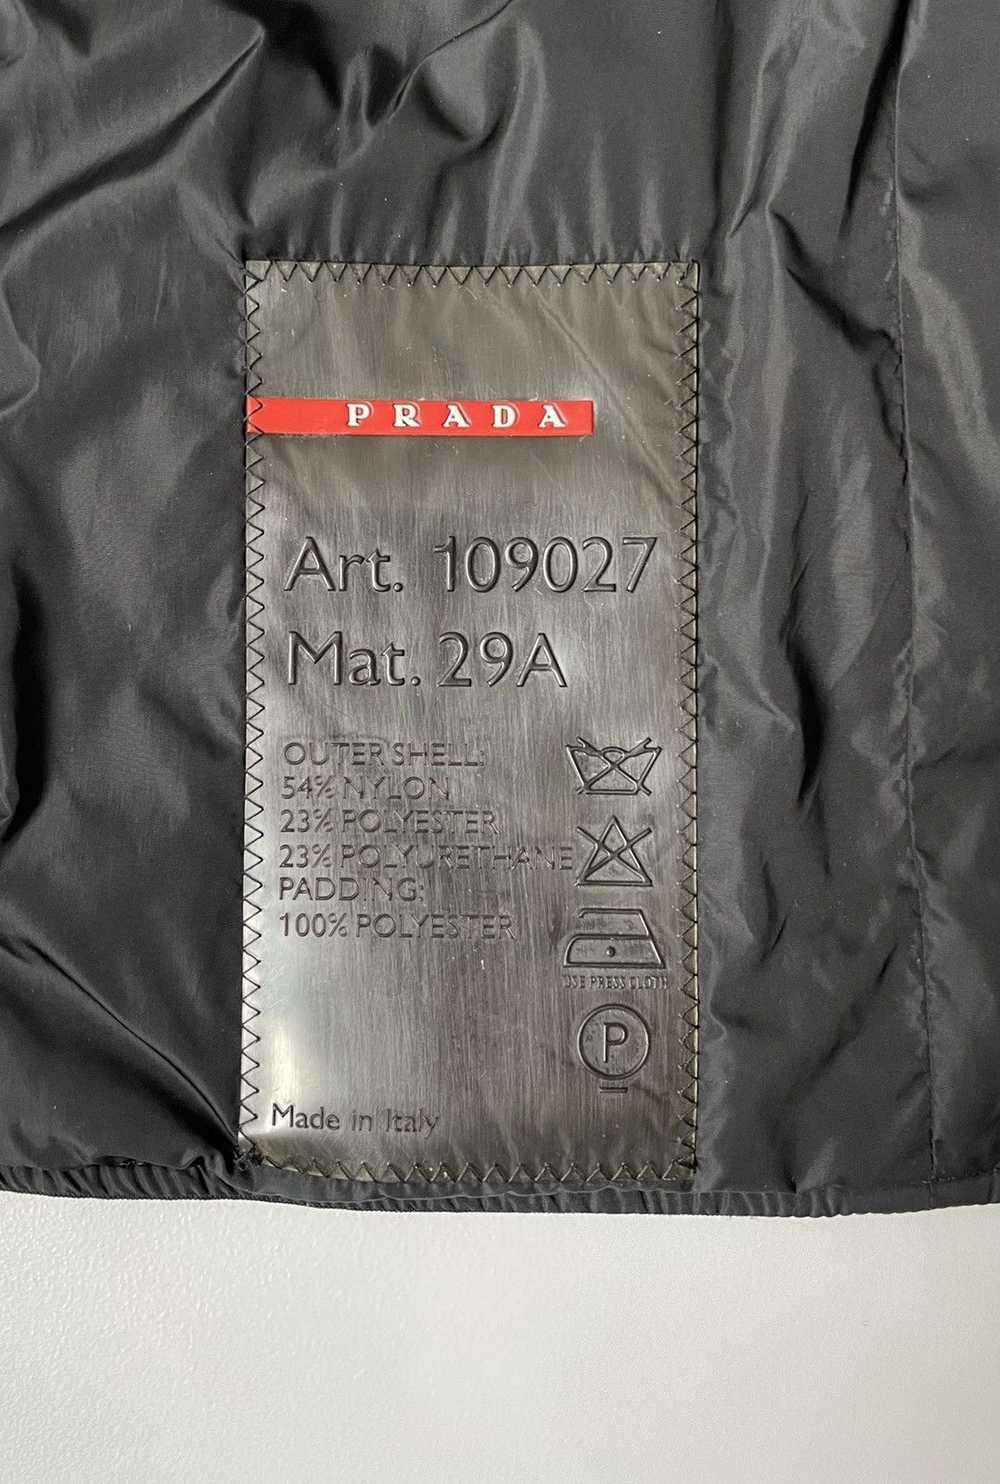 Prada A/W 1999 Balaclava Harness Vest - image 8